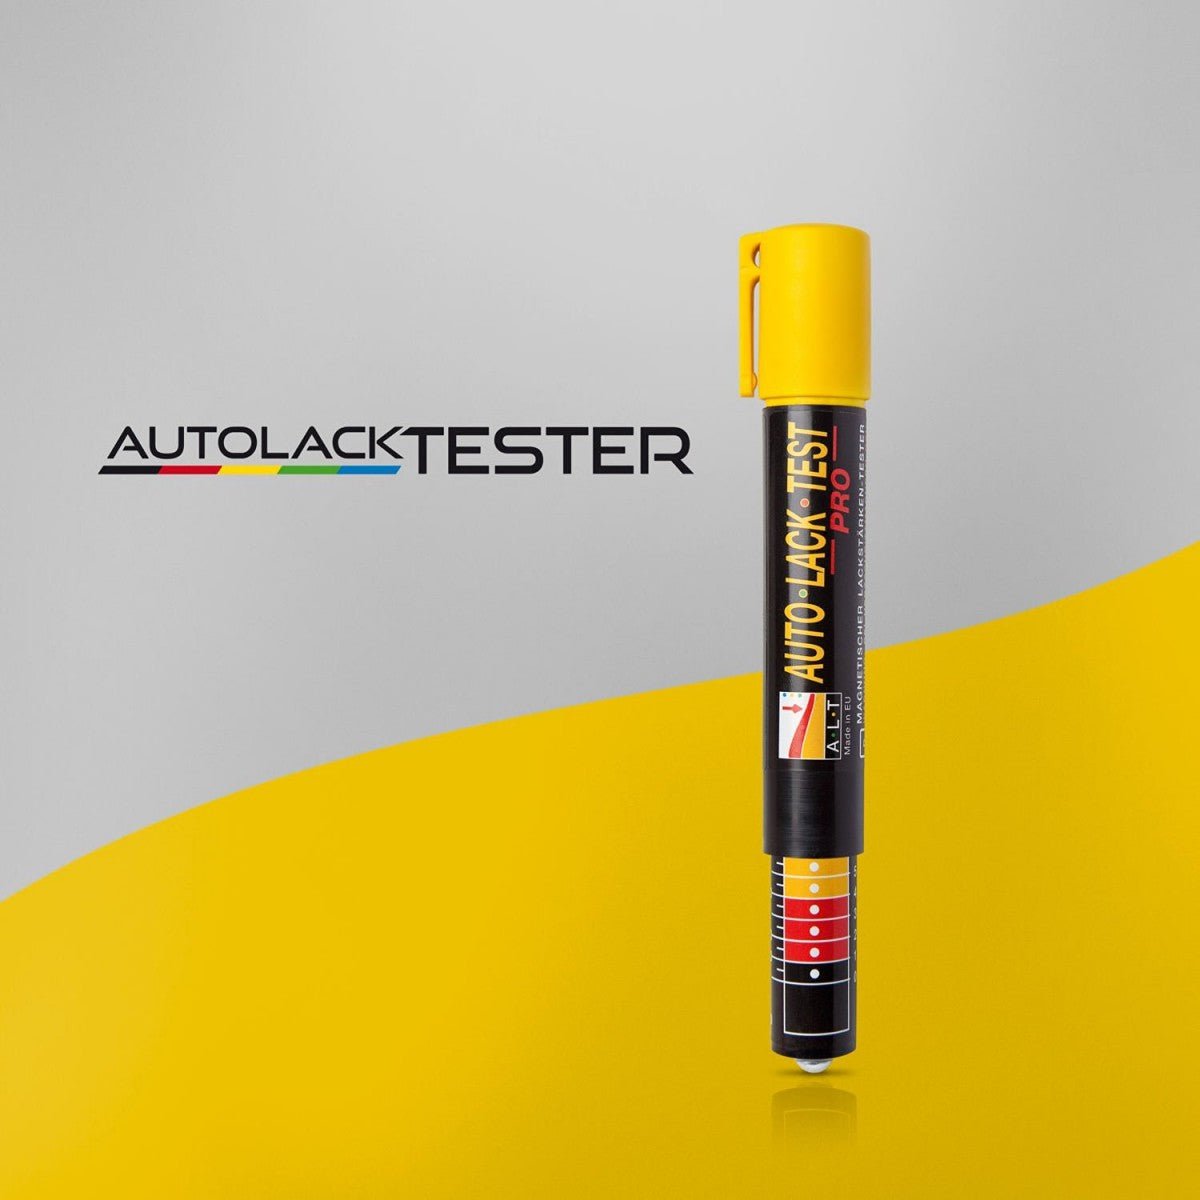 Autolack-Tester Pro - Das Original - Lack-Schichtdickenmessgerät - 1 Stück - CLEANPRODUCTS